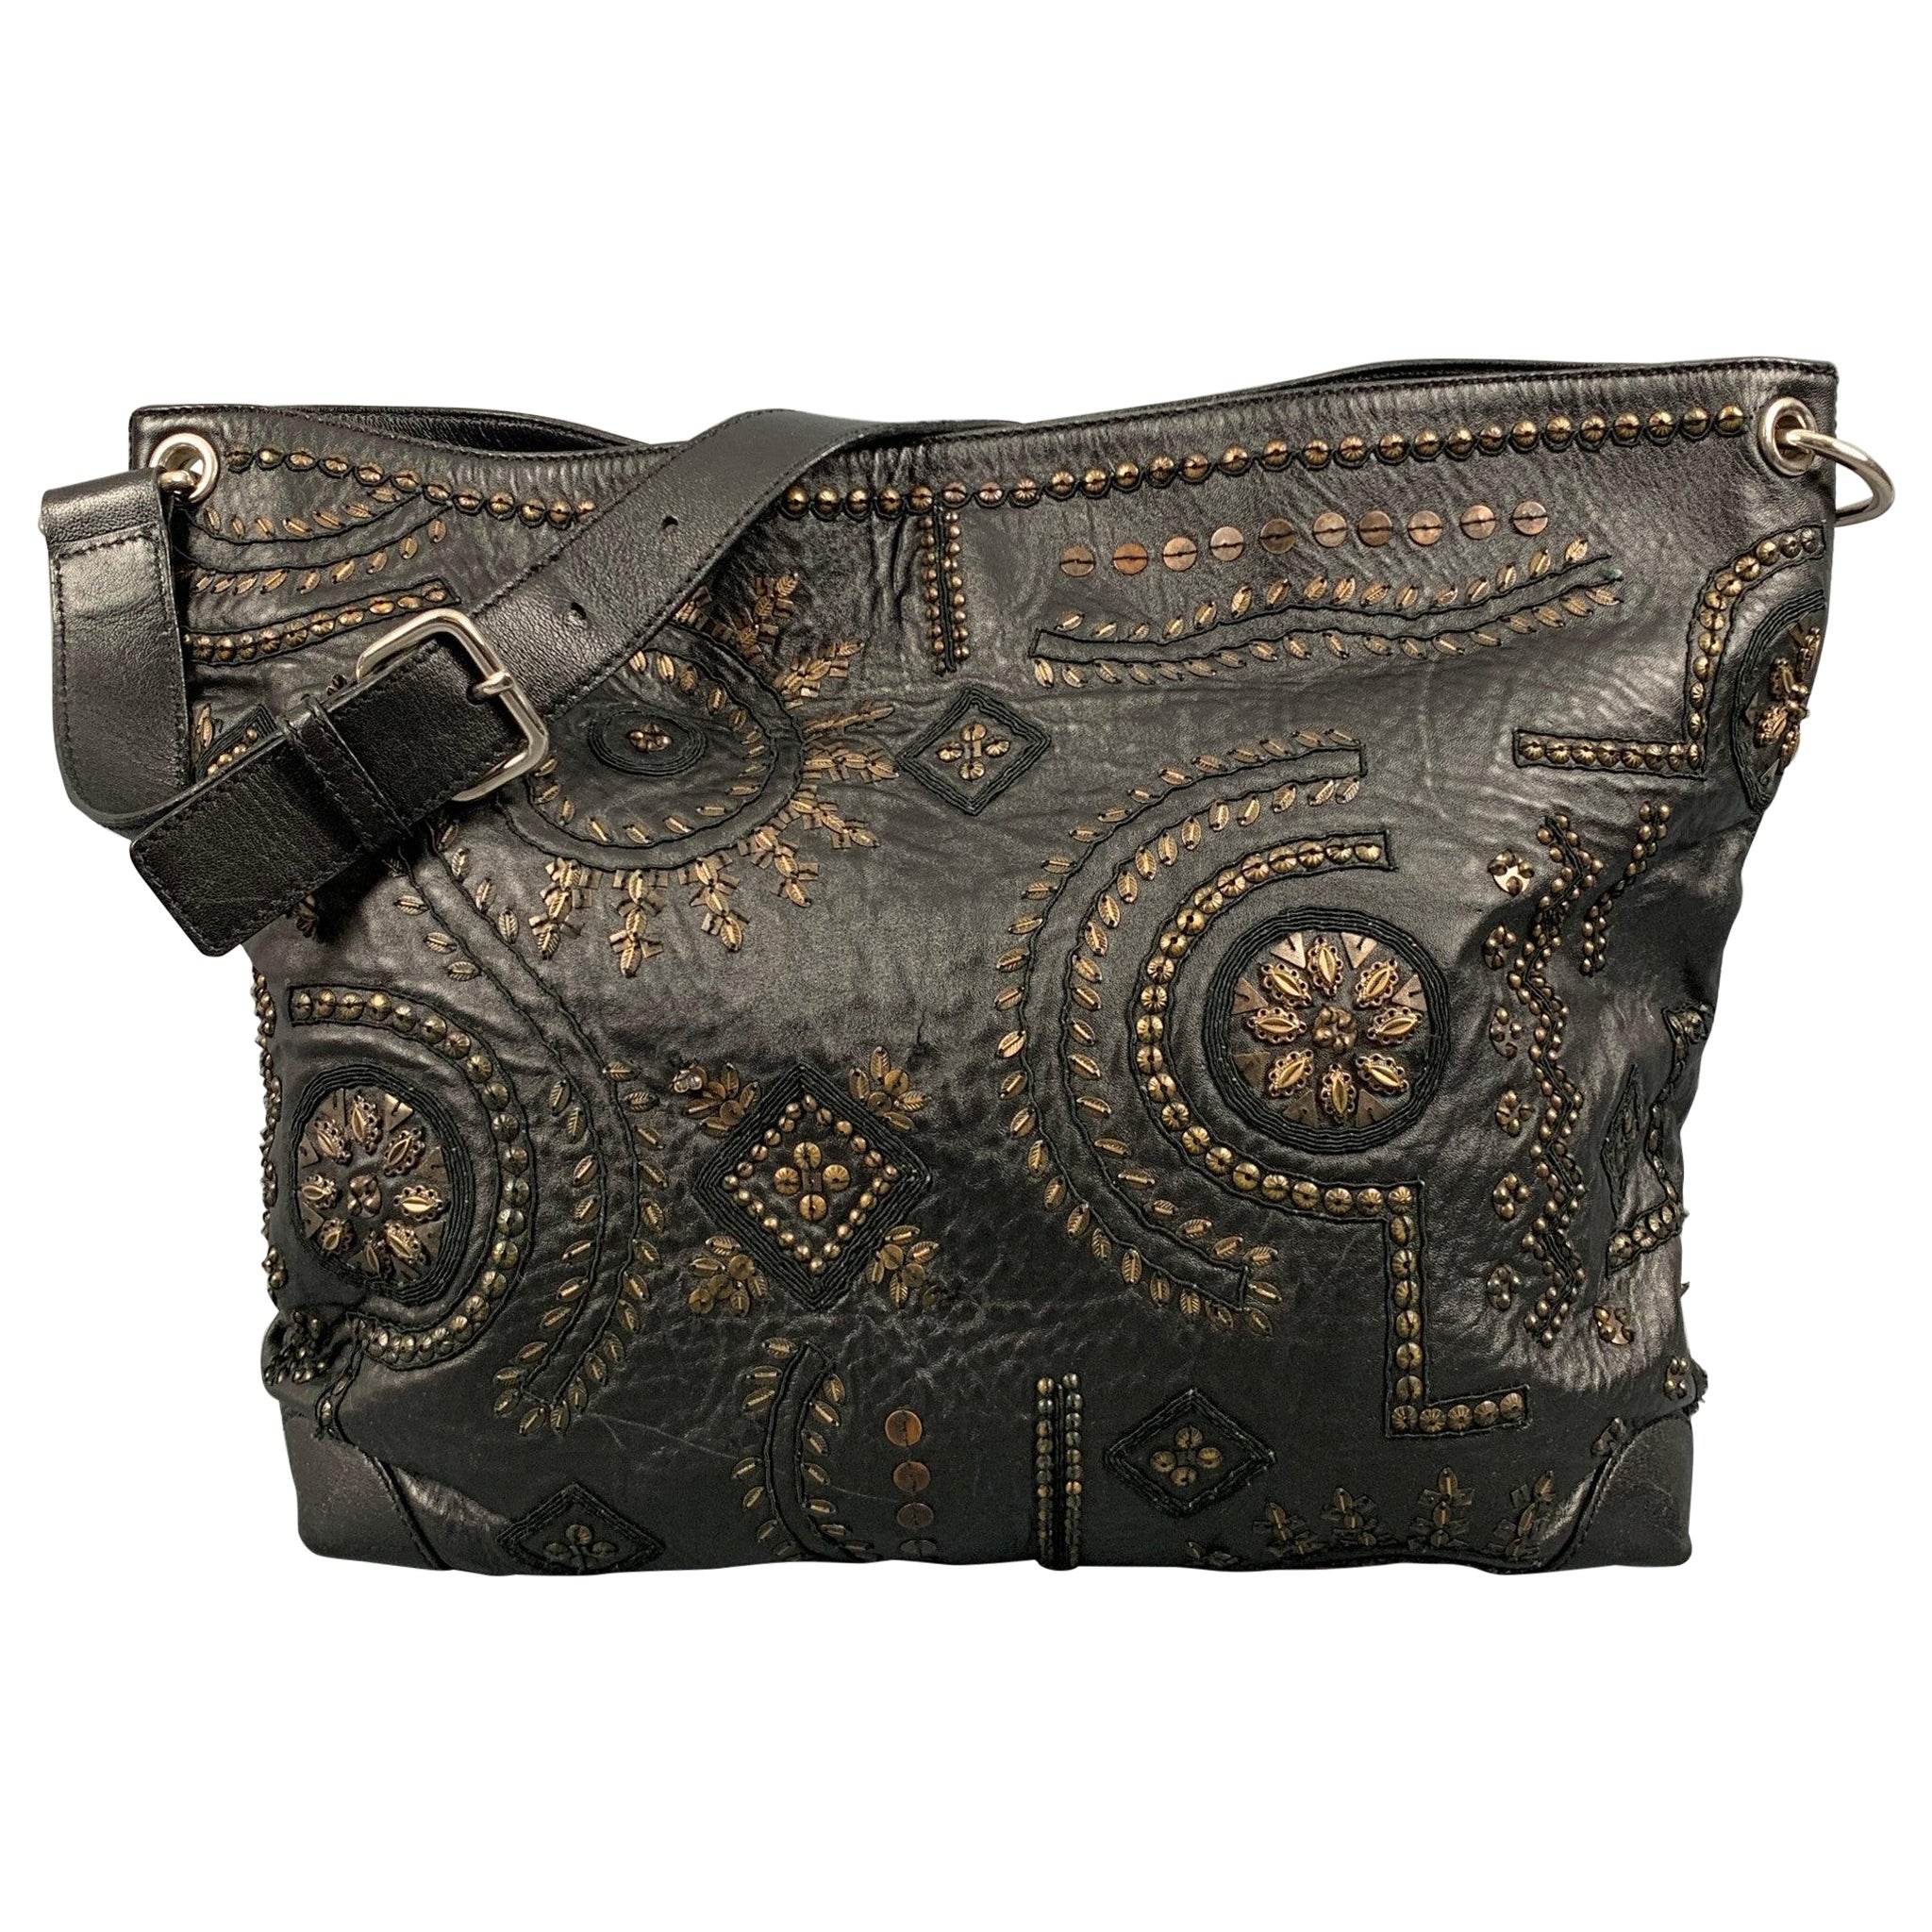 OSCAR DE LA RENTA Black Gold Studded Leather Handbag For Sale